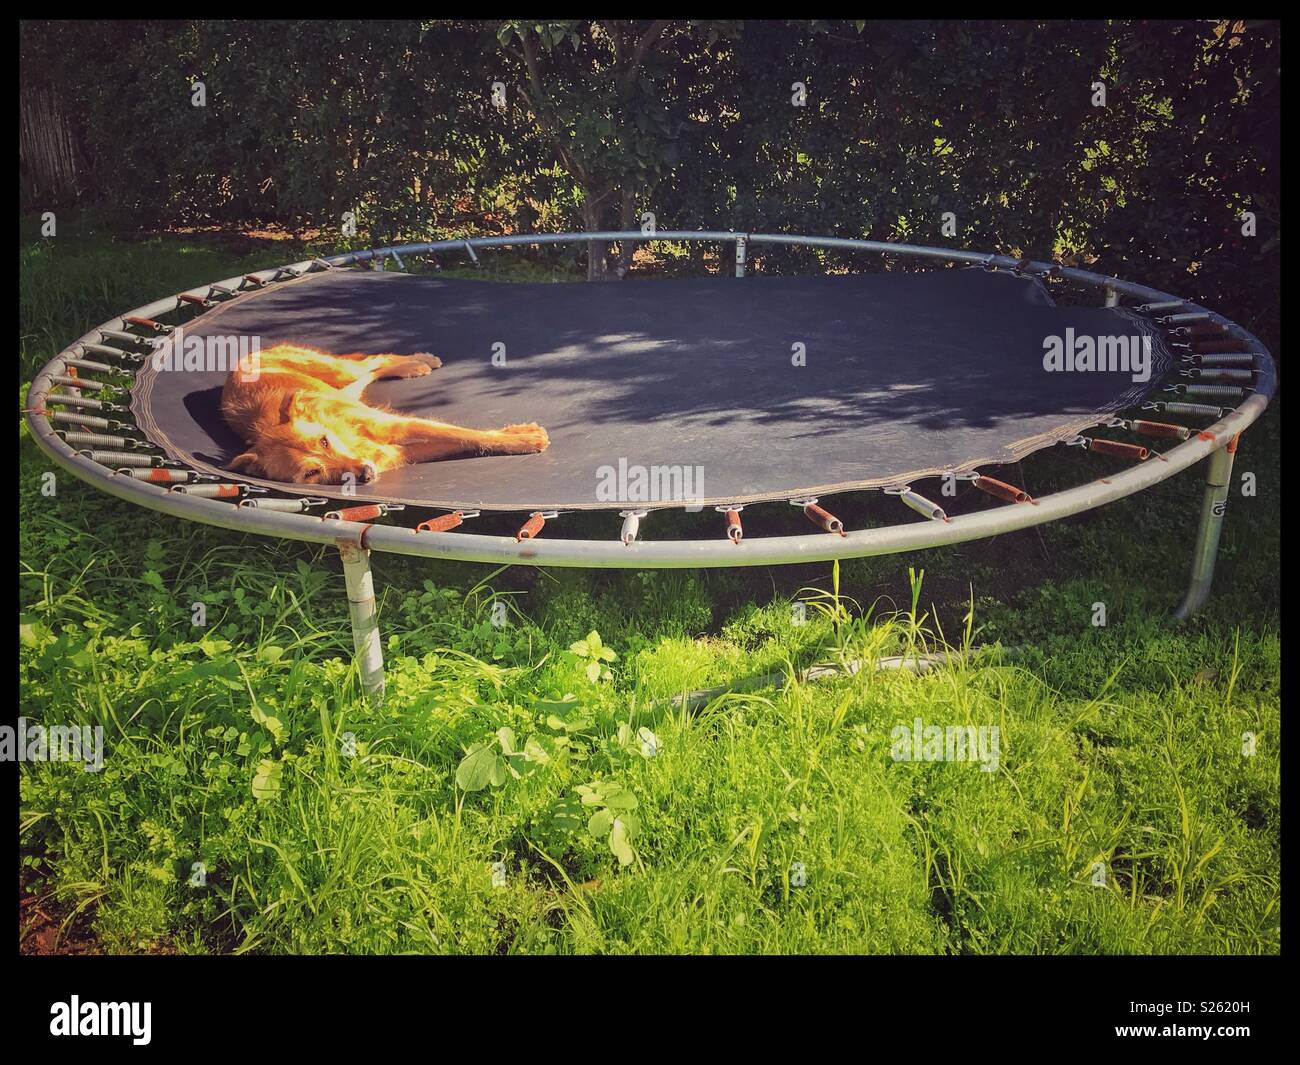 Graben schlafen auf einem Trampolin Stockfotografie - Alamy